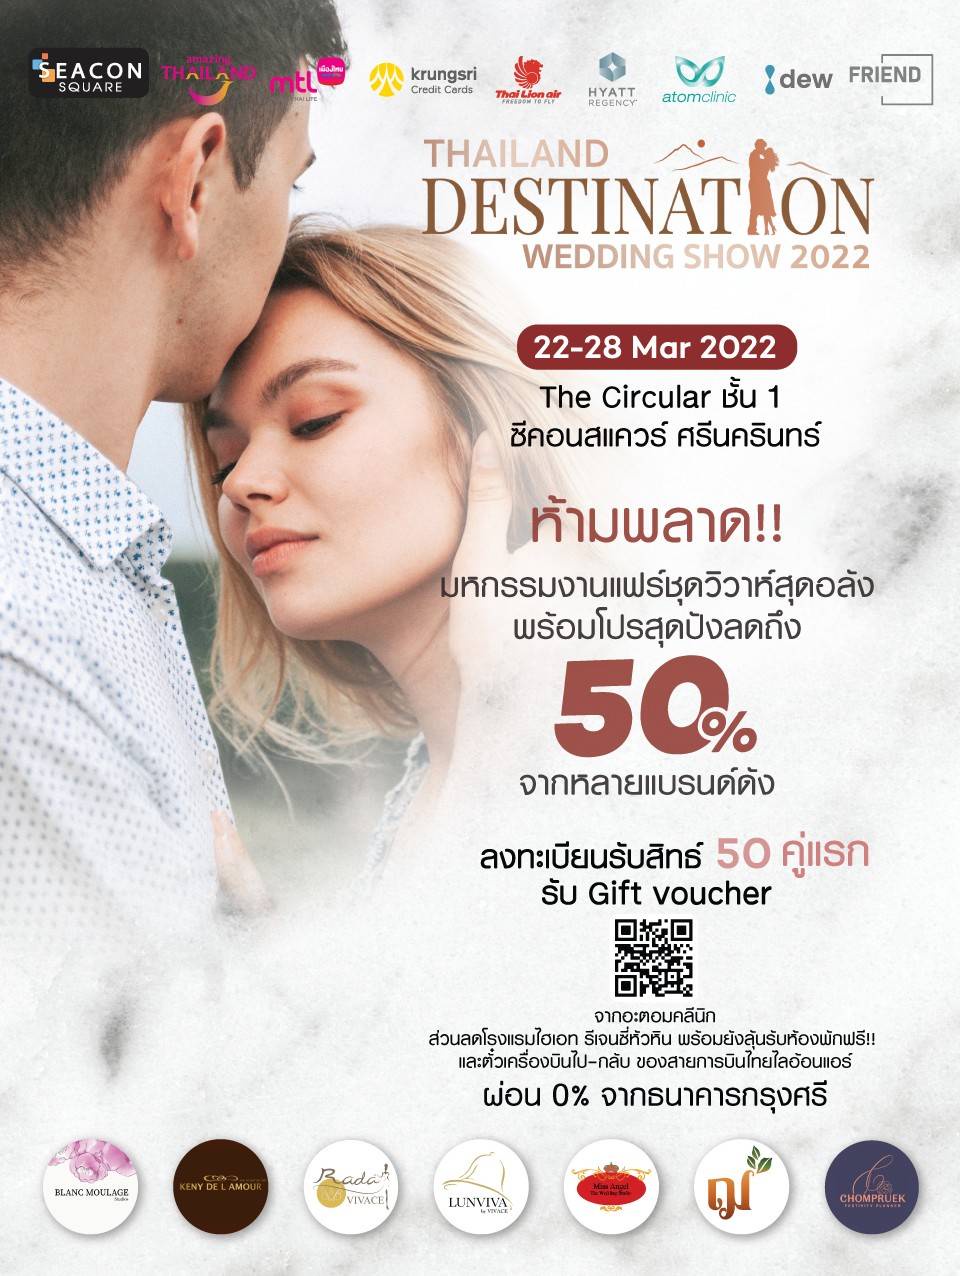 คุ้มกว่างานไหนๆ!! กับ Thailand Destination Wedding Show 2022 มหกรรมงานแฟร์ชุดวิวาห์สุดอลังพร้อมโปรสุดปังส่วนลดสูงสุดกว่า